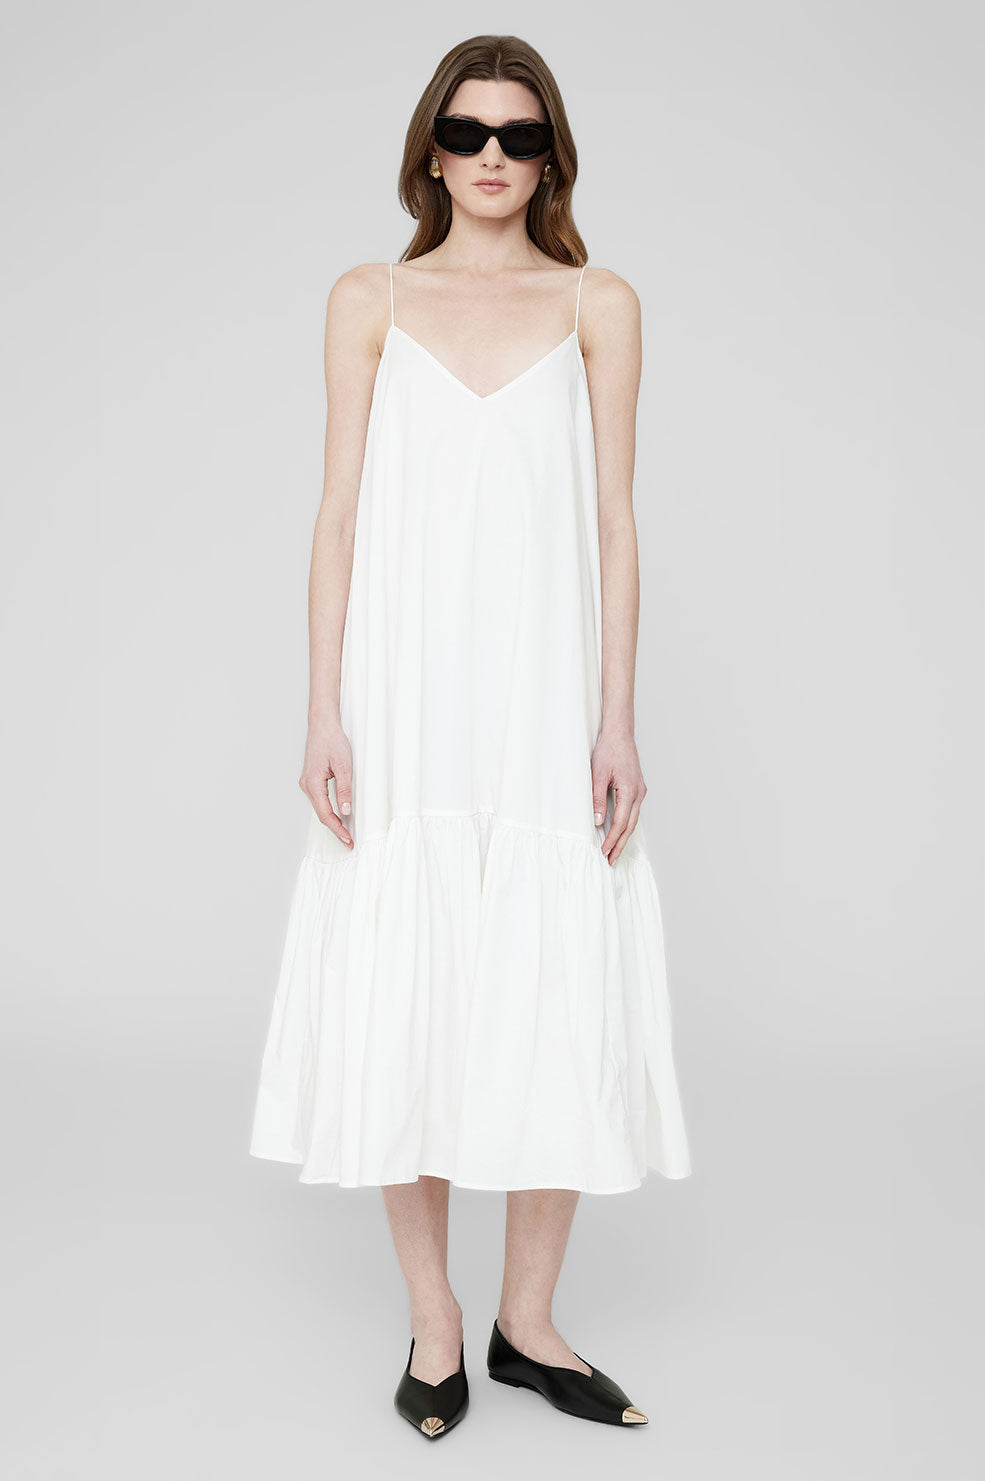 Averie Dress - White